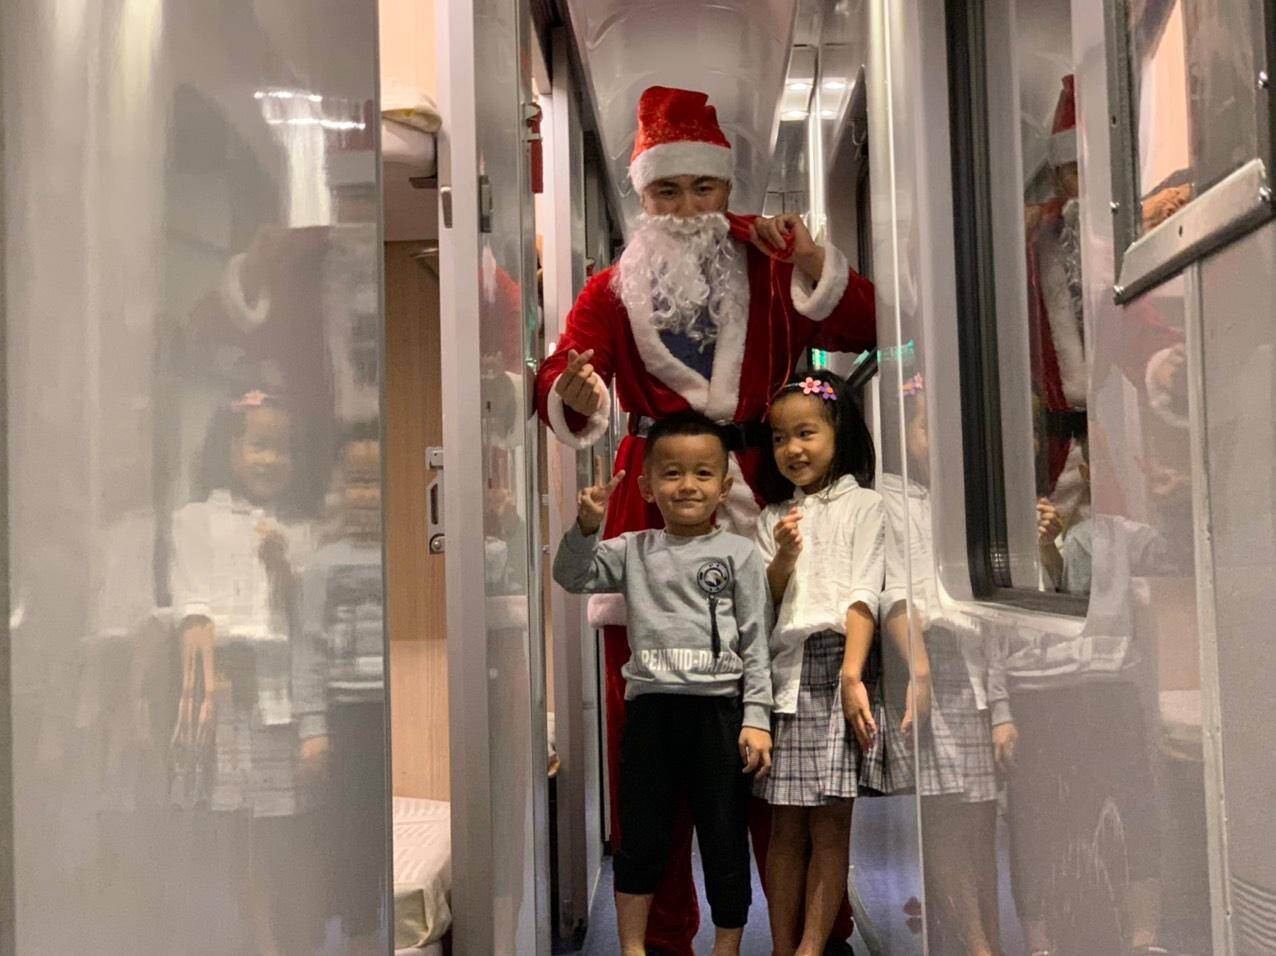 Ông già Noel bất ngờ xuất hiện trên tàu hỏa, hành khách vỡ òa niềm vui